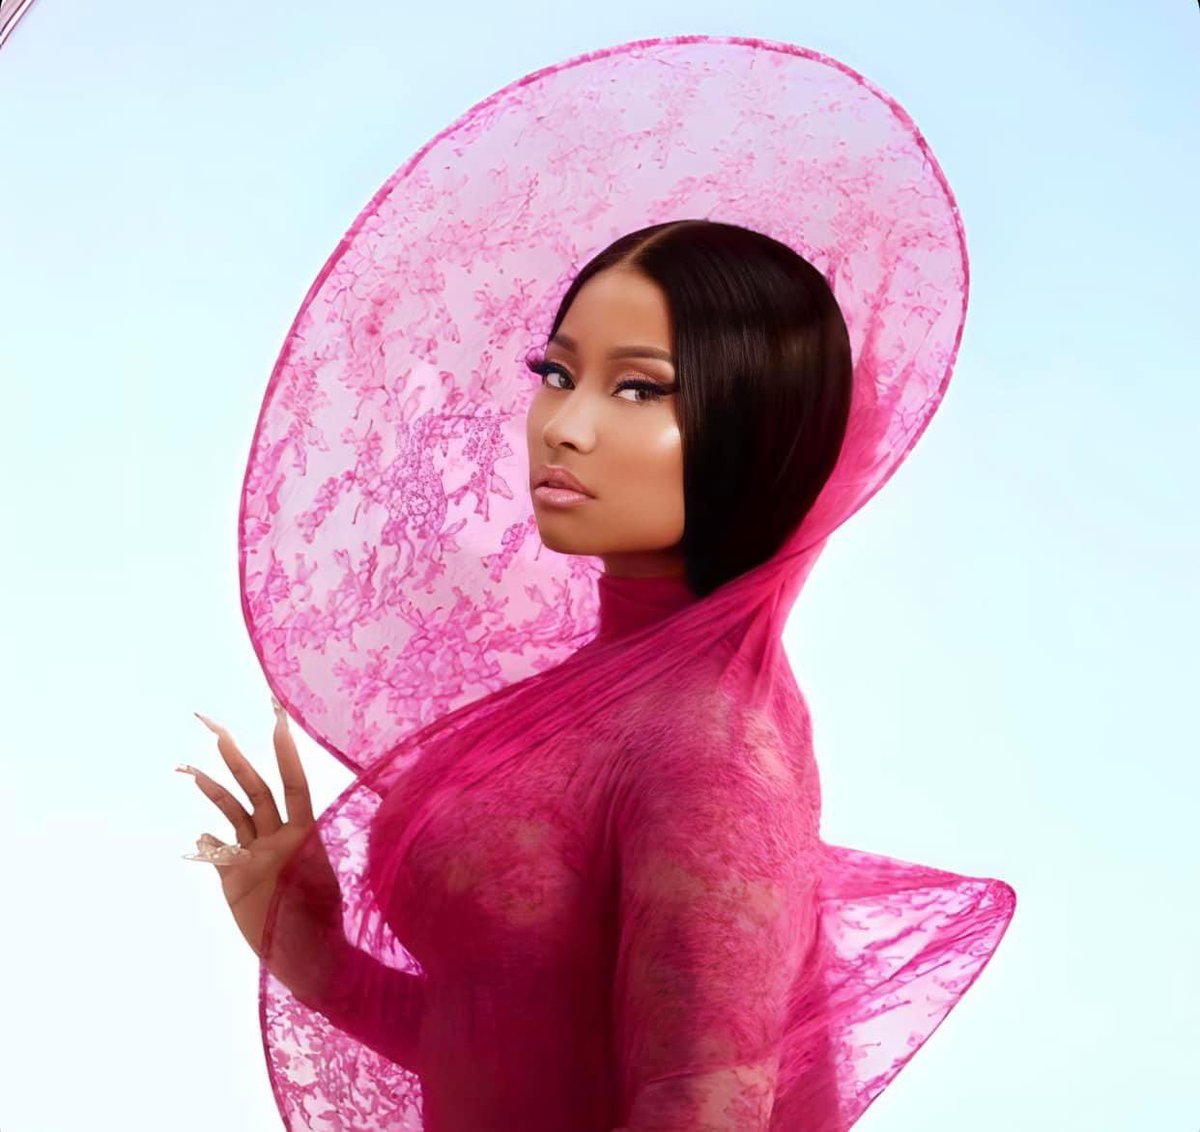 Nicki Minaj - Pink Friday 2 (target Exclusive, Vinyl) : Target